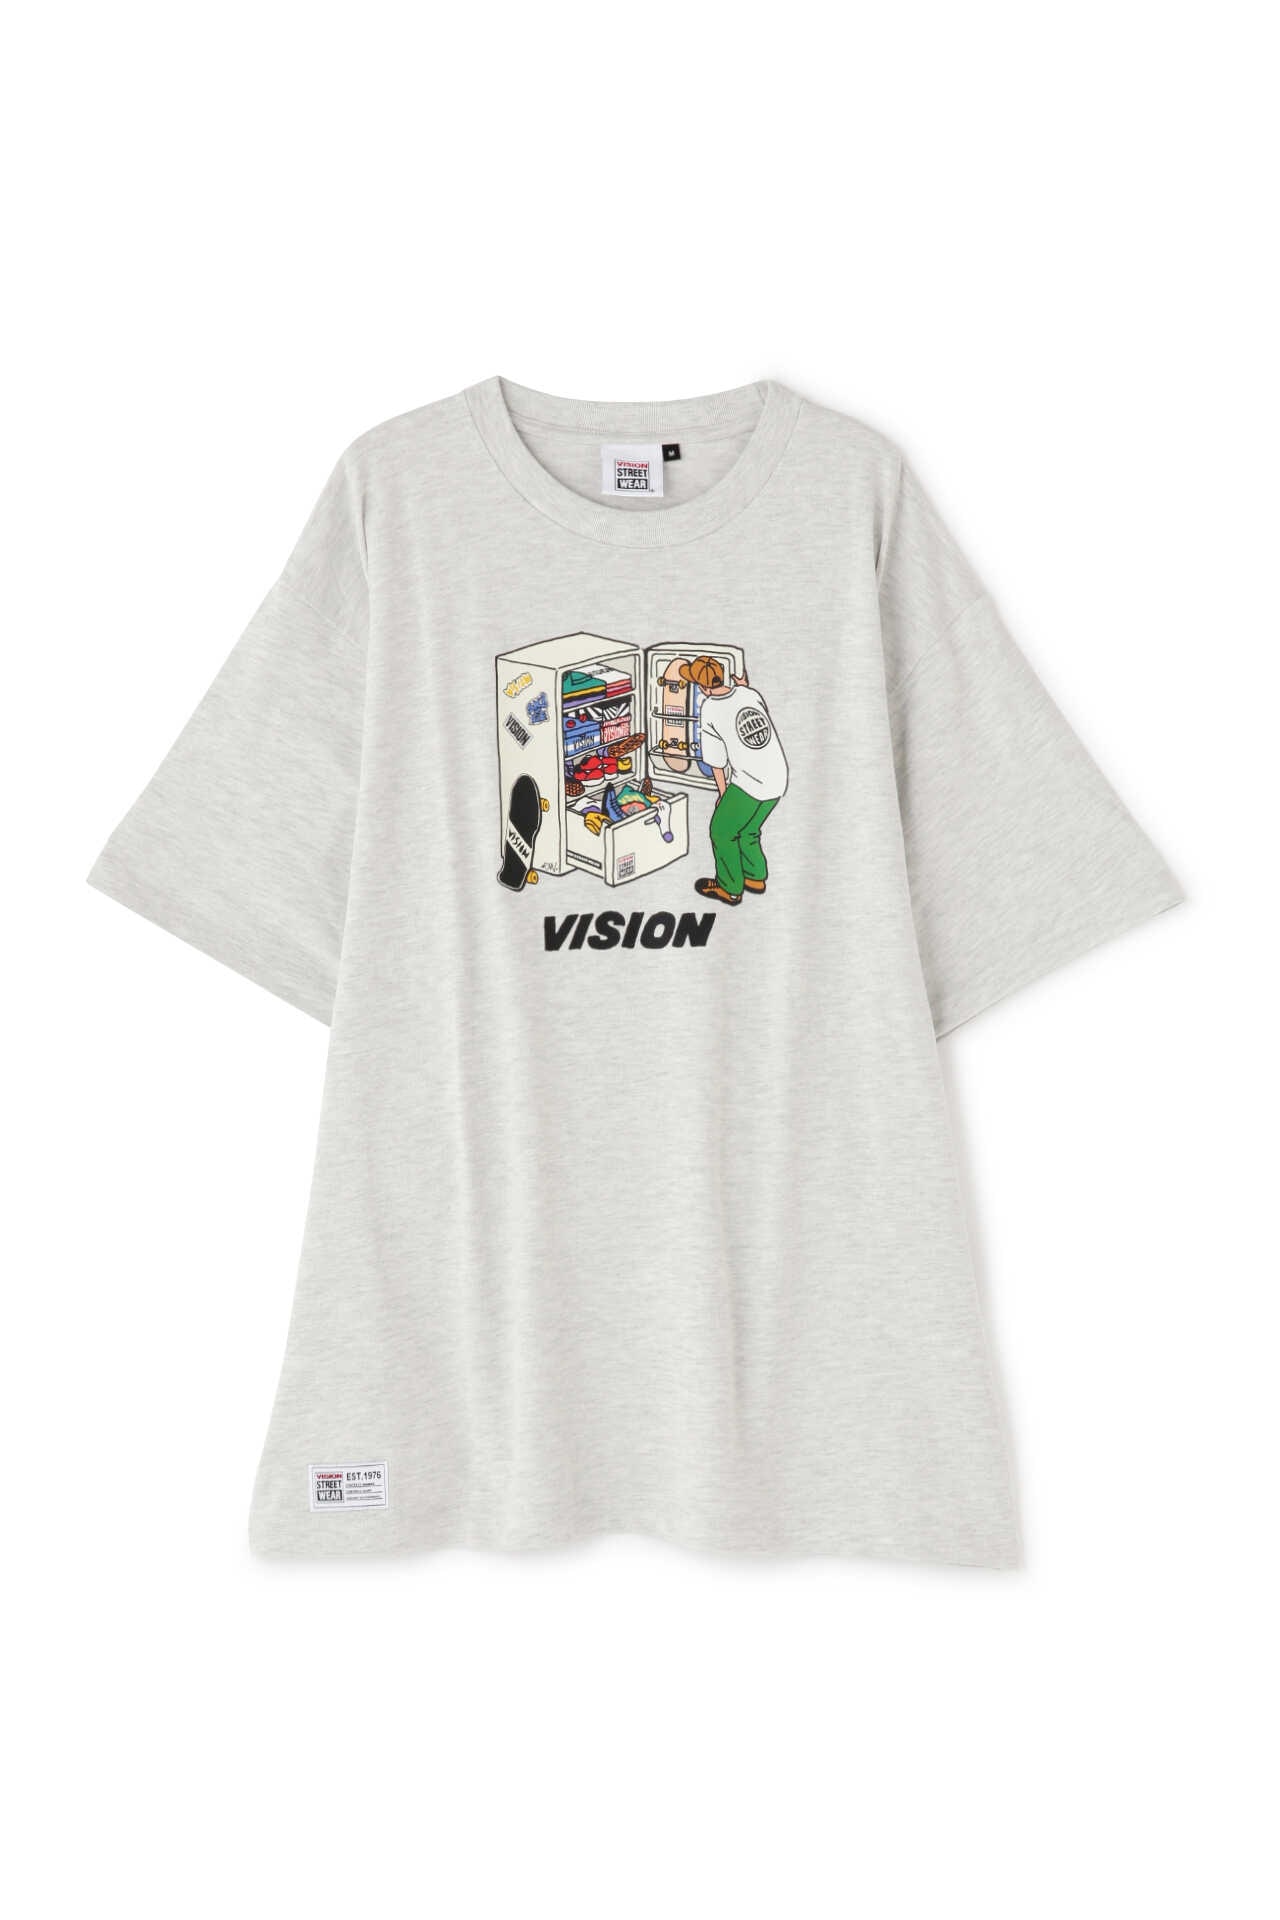 VISION Tシャツ